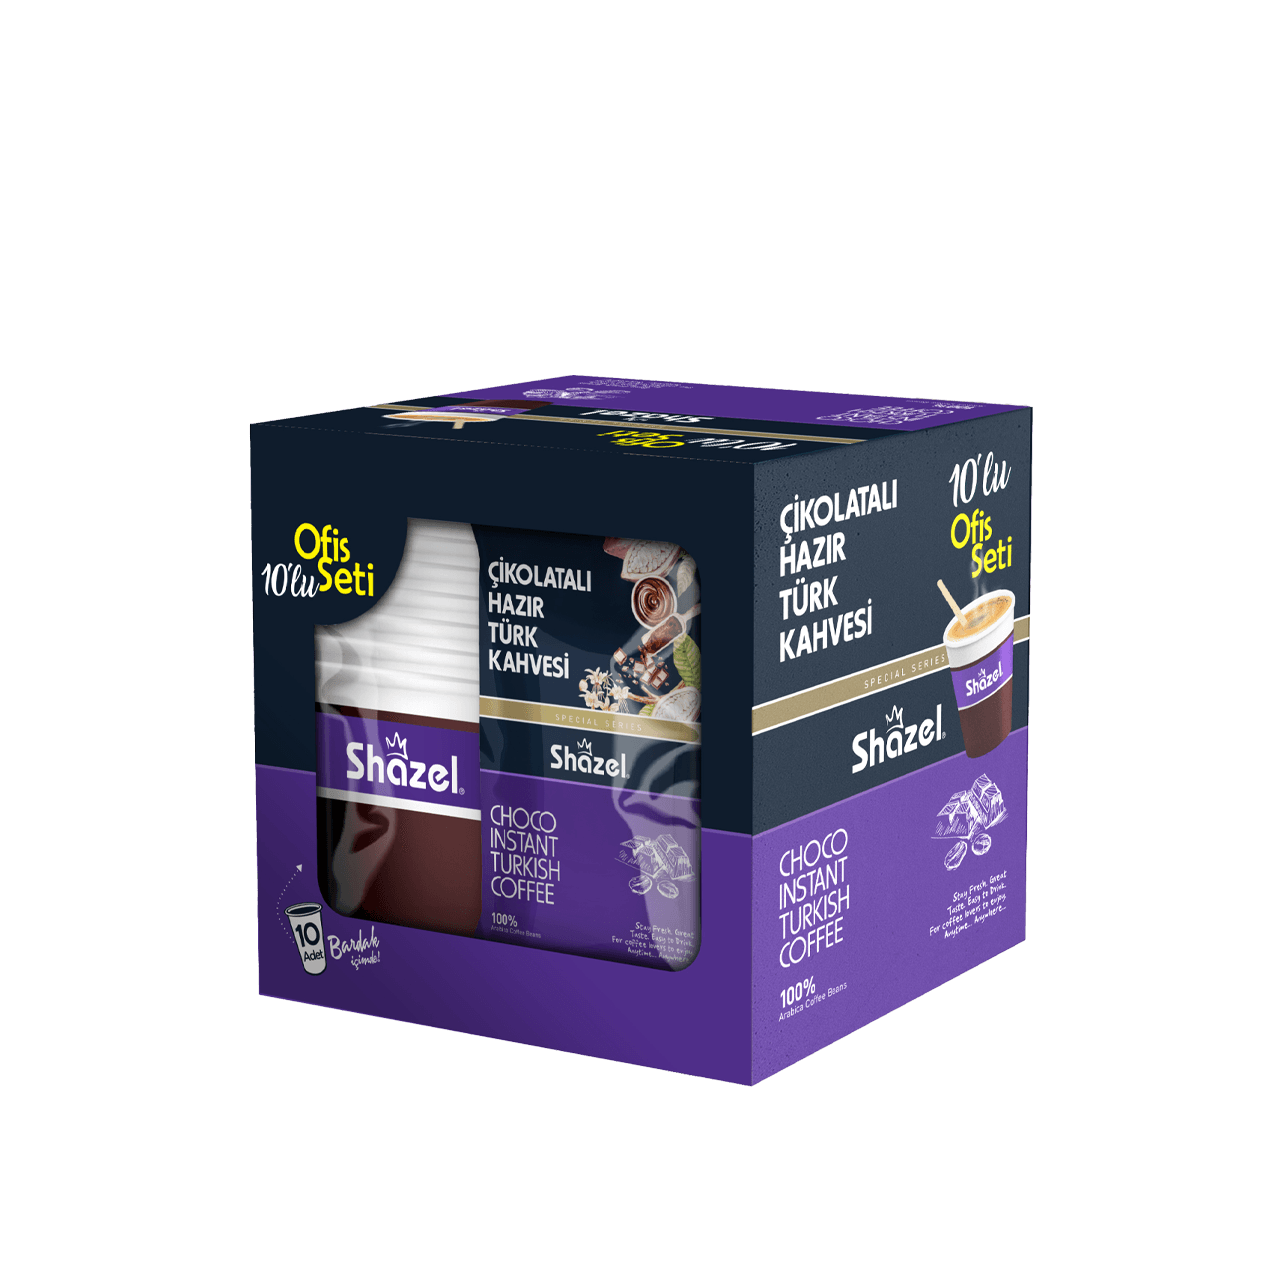 Shazel Choco Instant Turkish Coffee – Office Set 12G x 10 Pieces x 12 Box x 1 Carton